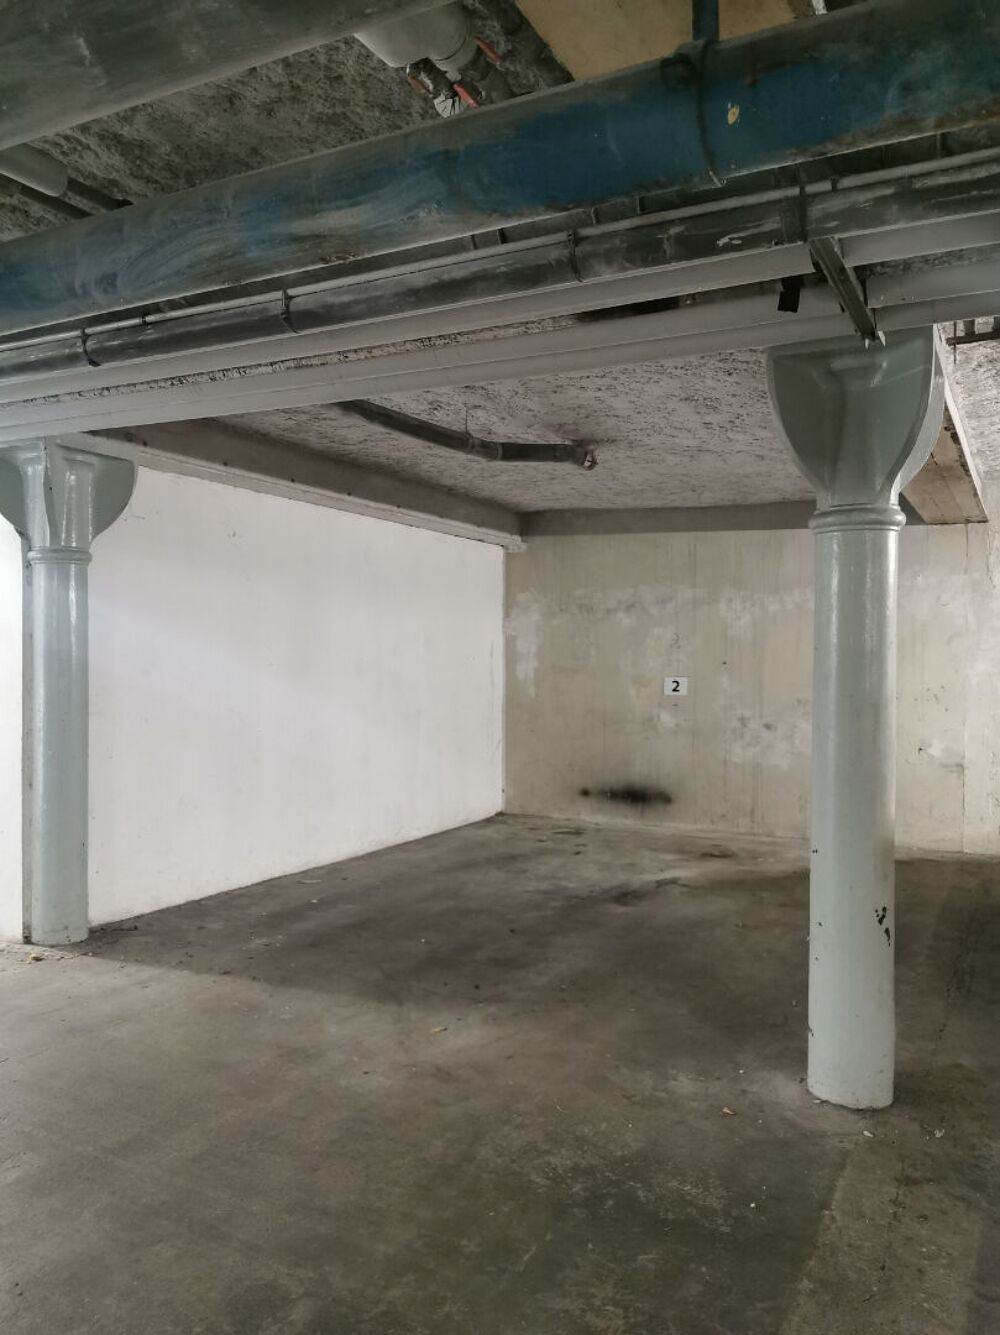 Location Parking/Garage Place de parking dans un sous-sol / Courlancy / Rsidence scurise / Reims